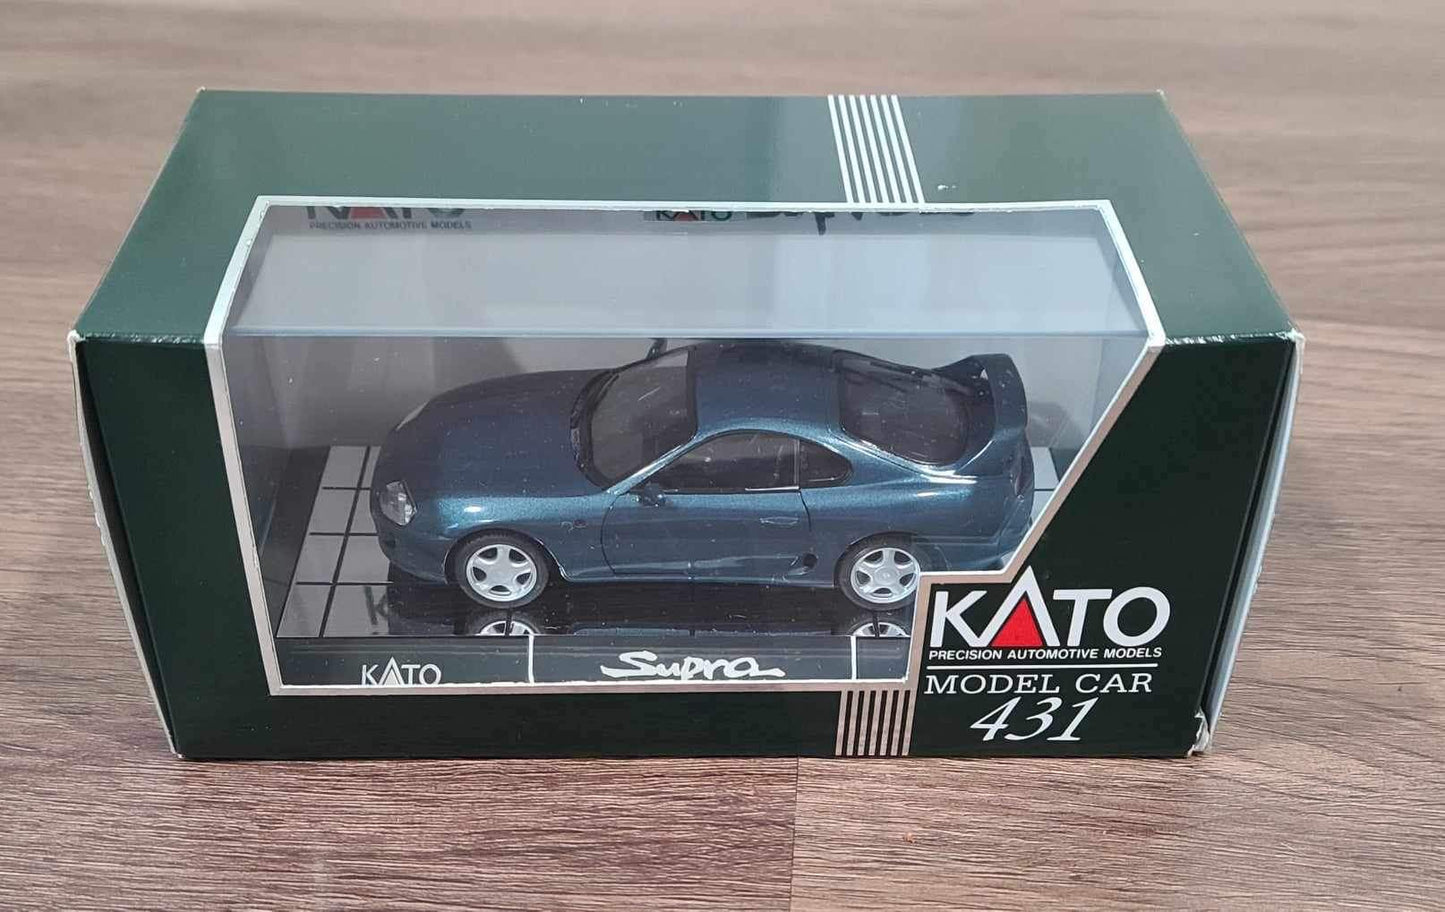 KATO model car 431